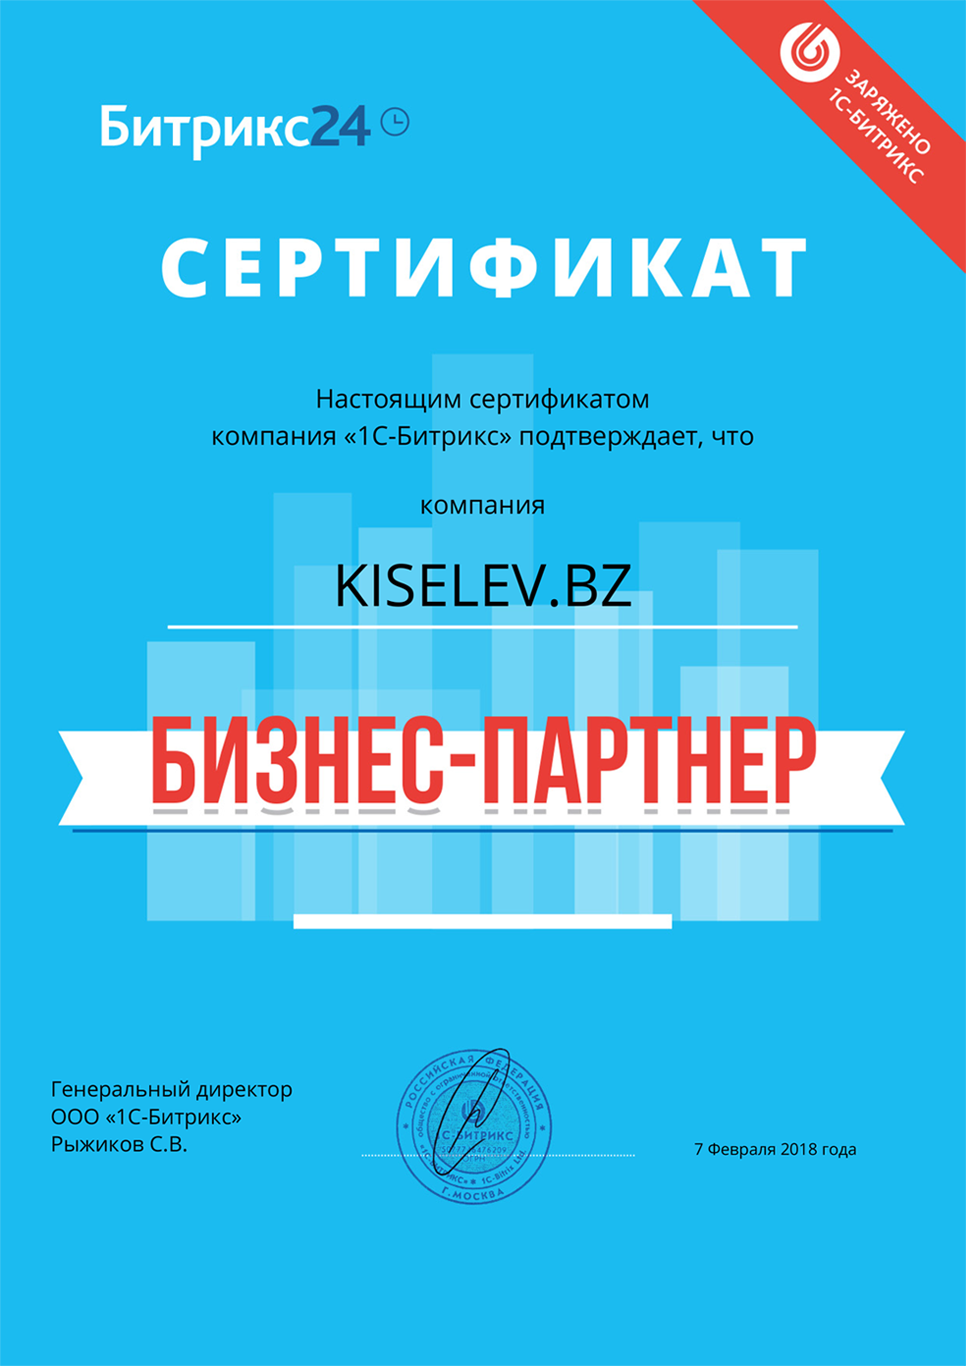 Сертификат партнёра по АМОСРМ в Симе